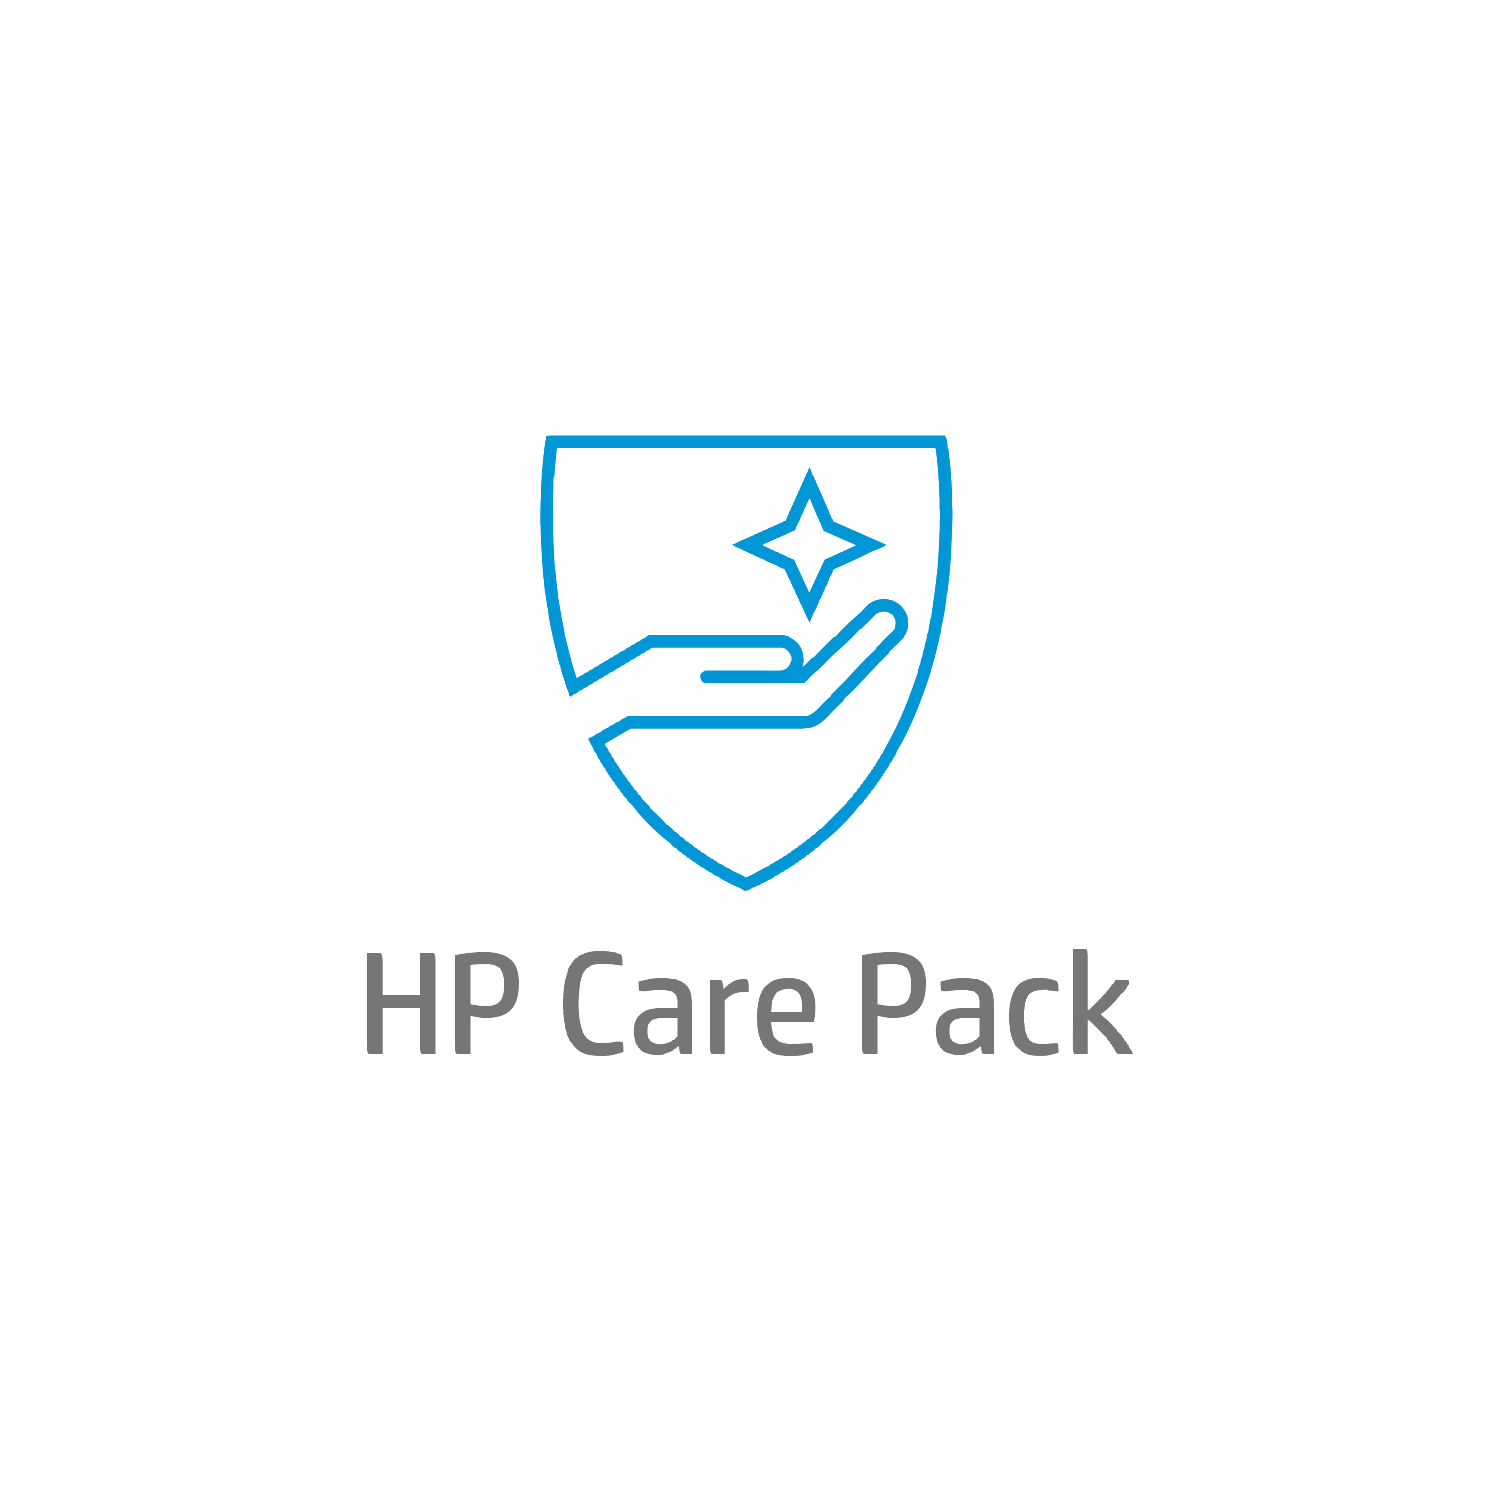 Bild von HP Active Care Lösungs-Support vor Ort am nächsten Arbeitstag für Desktops - 4 Jahre - Active Care - Remote und vor Ort - Unter Garantie - Standardarbeitstage - 9 Stunden - 4 Jahre - Reaktion am nächsten Arbeitstag